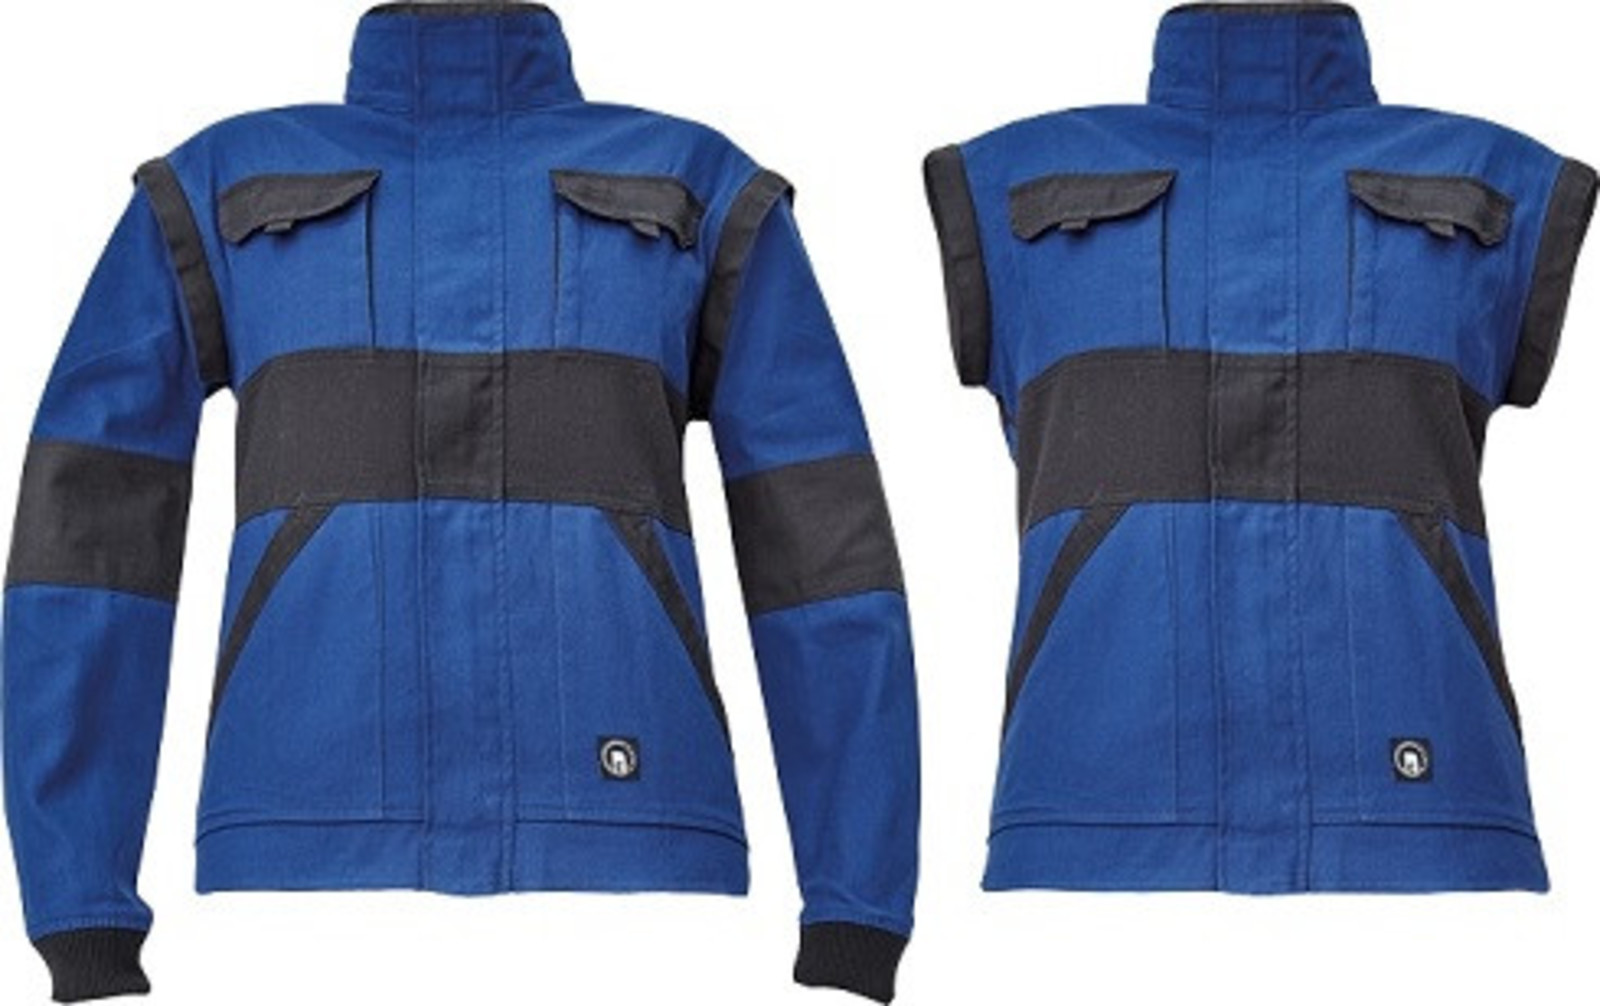 Dámska bavlnená montérková bunda Cerva Max Neo Lady 2v1 - veľkosť: 50, farba: modrá/čierna